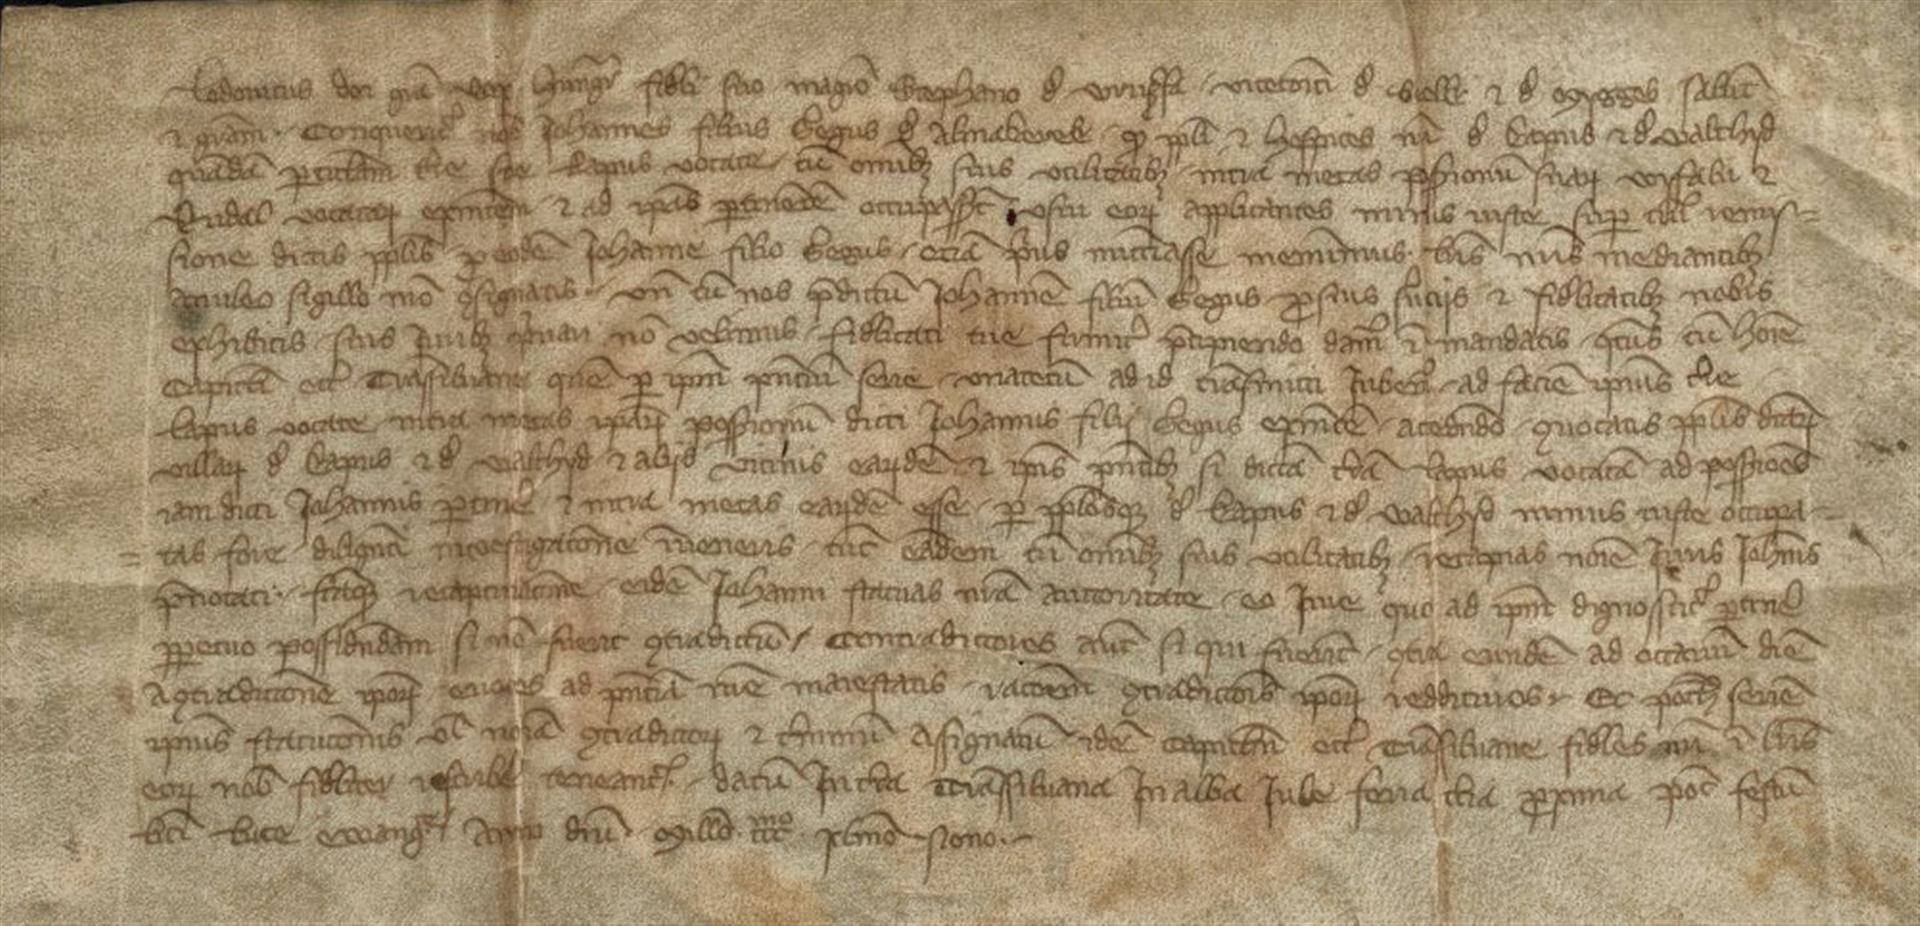 Diploma emisă de regele Ludovic I de Anjou la Alba Iulia în 20 octombrie 1349.